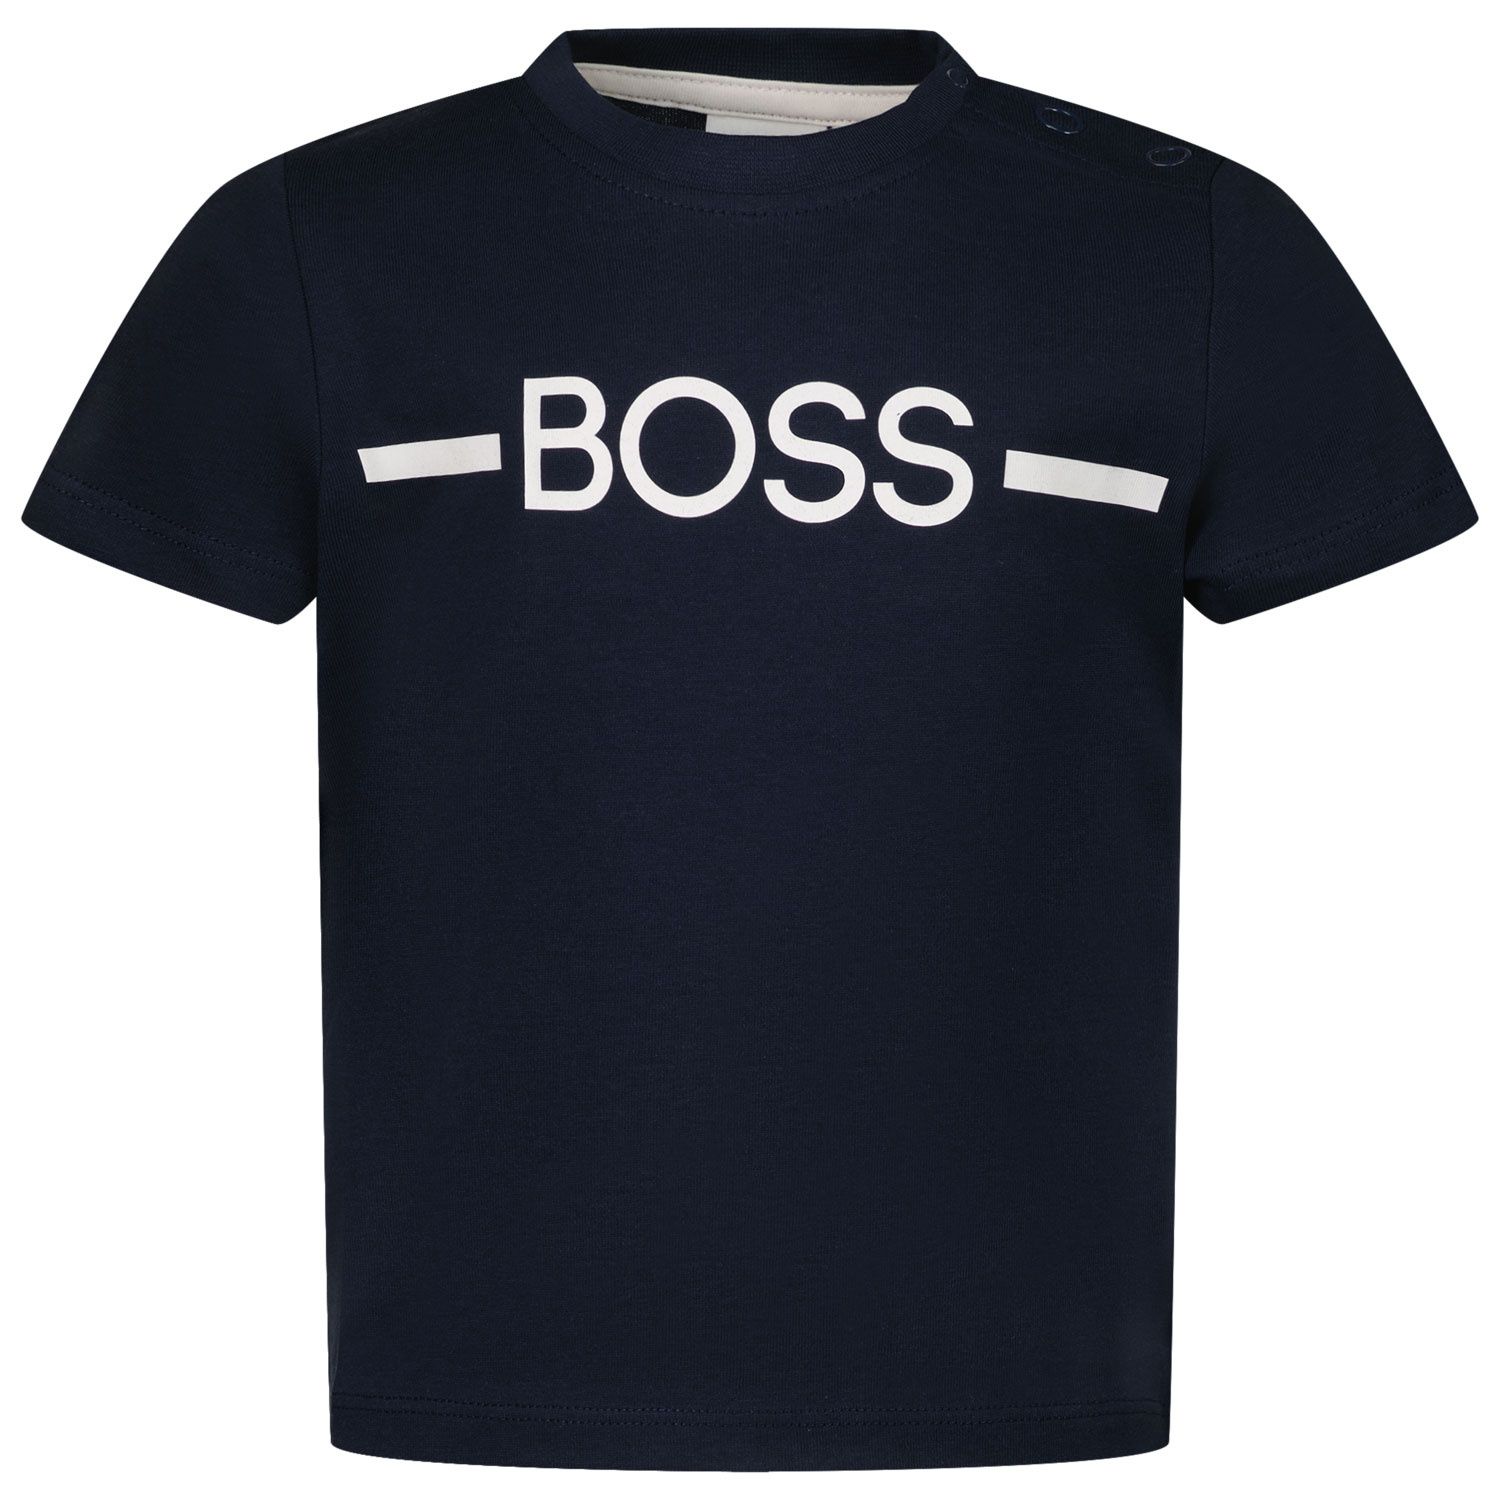 Afbeelding van Boss J05908 baby t-shirt navy